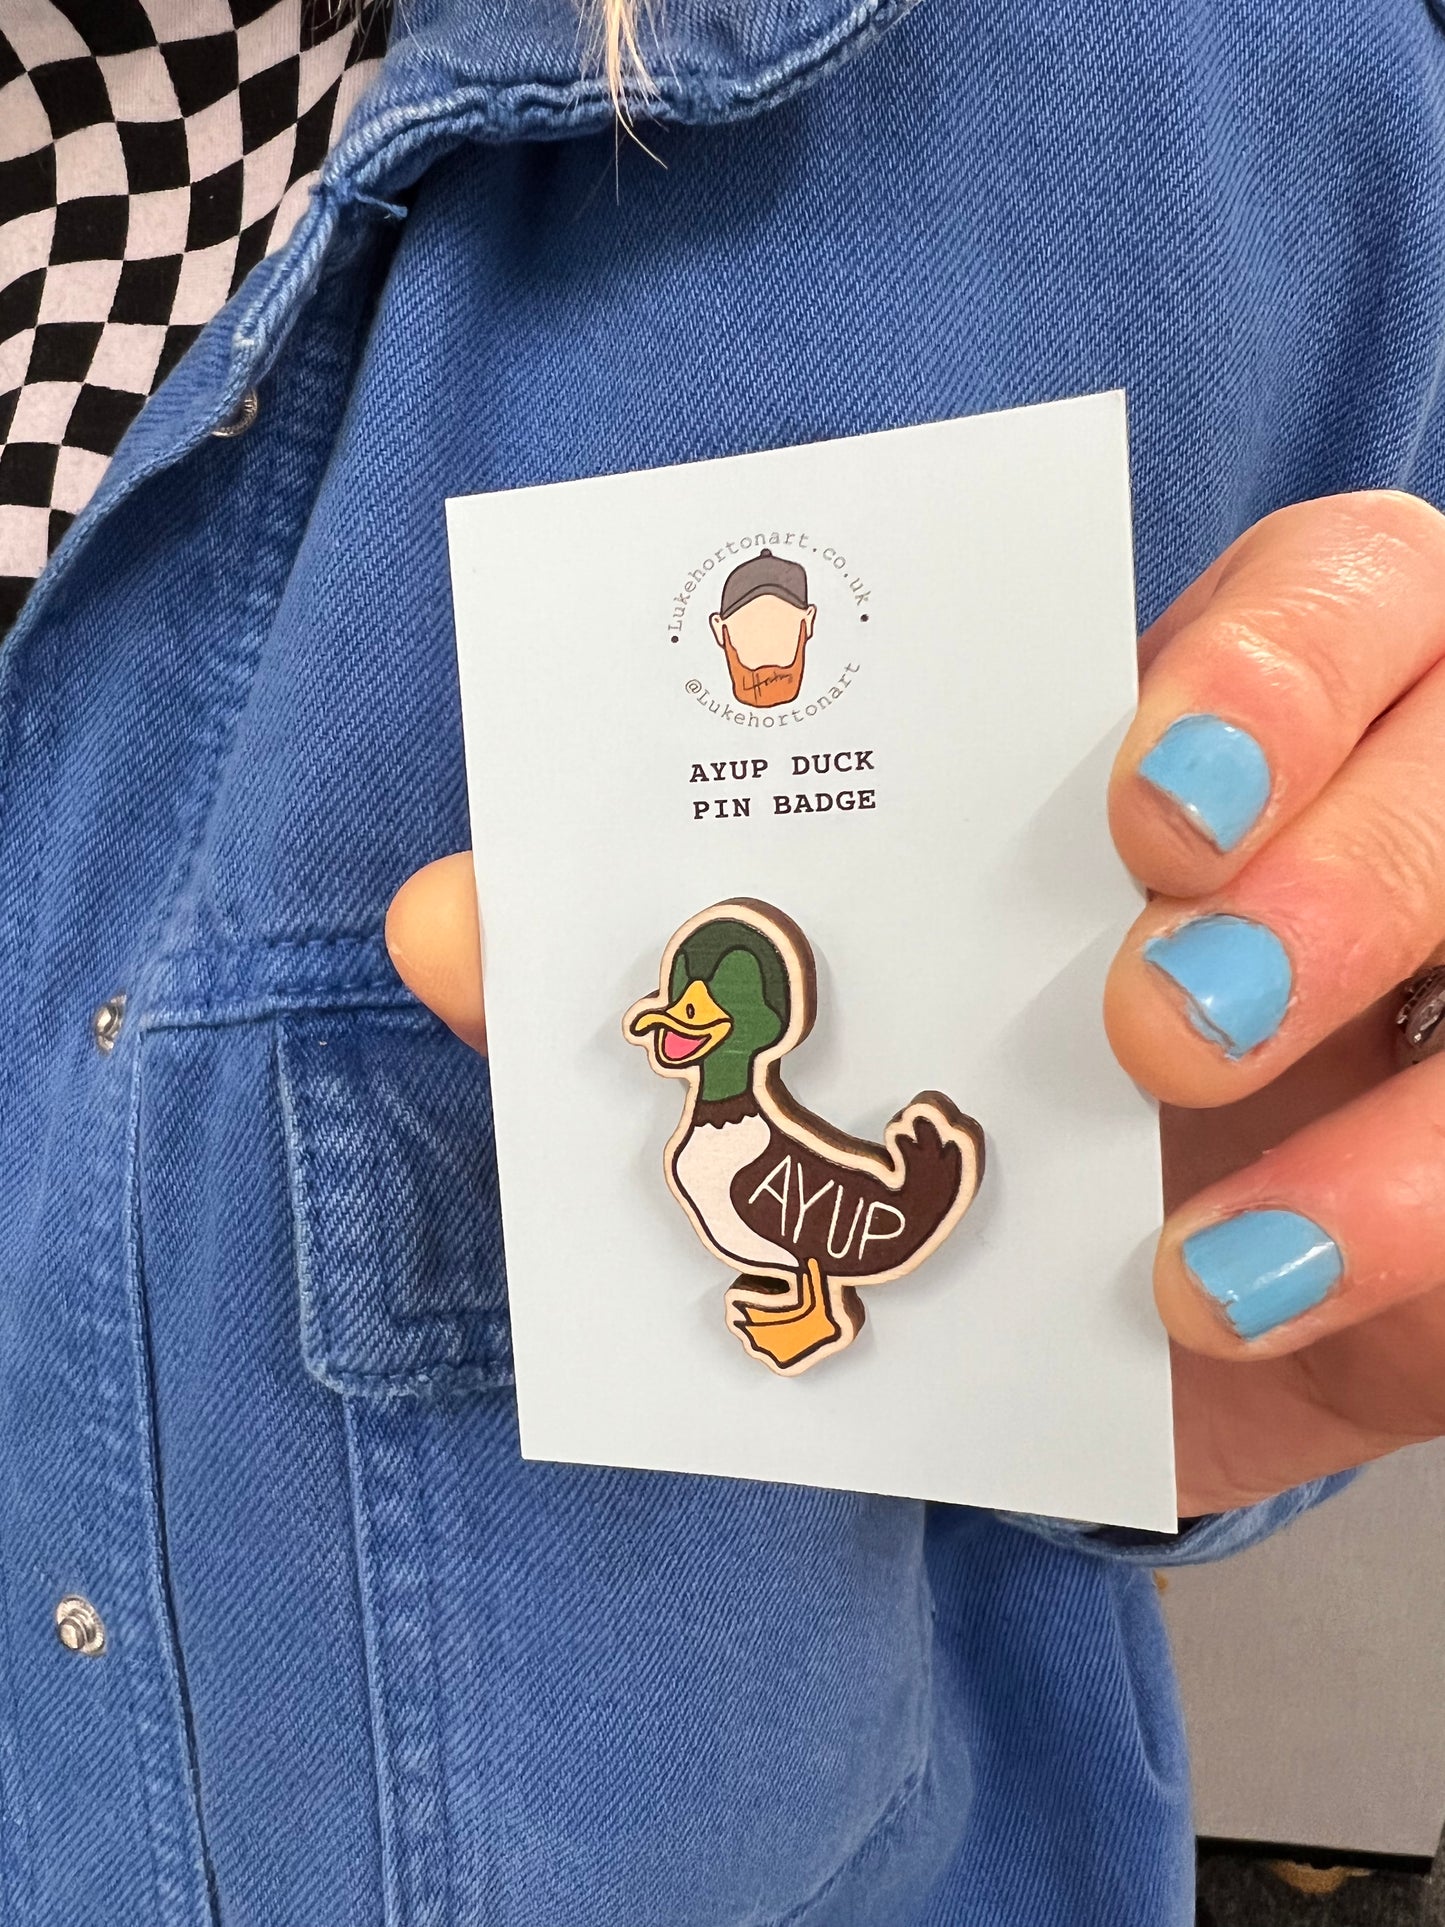 Ayup Duck - ECO Pin Badge - LukeHorton Art